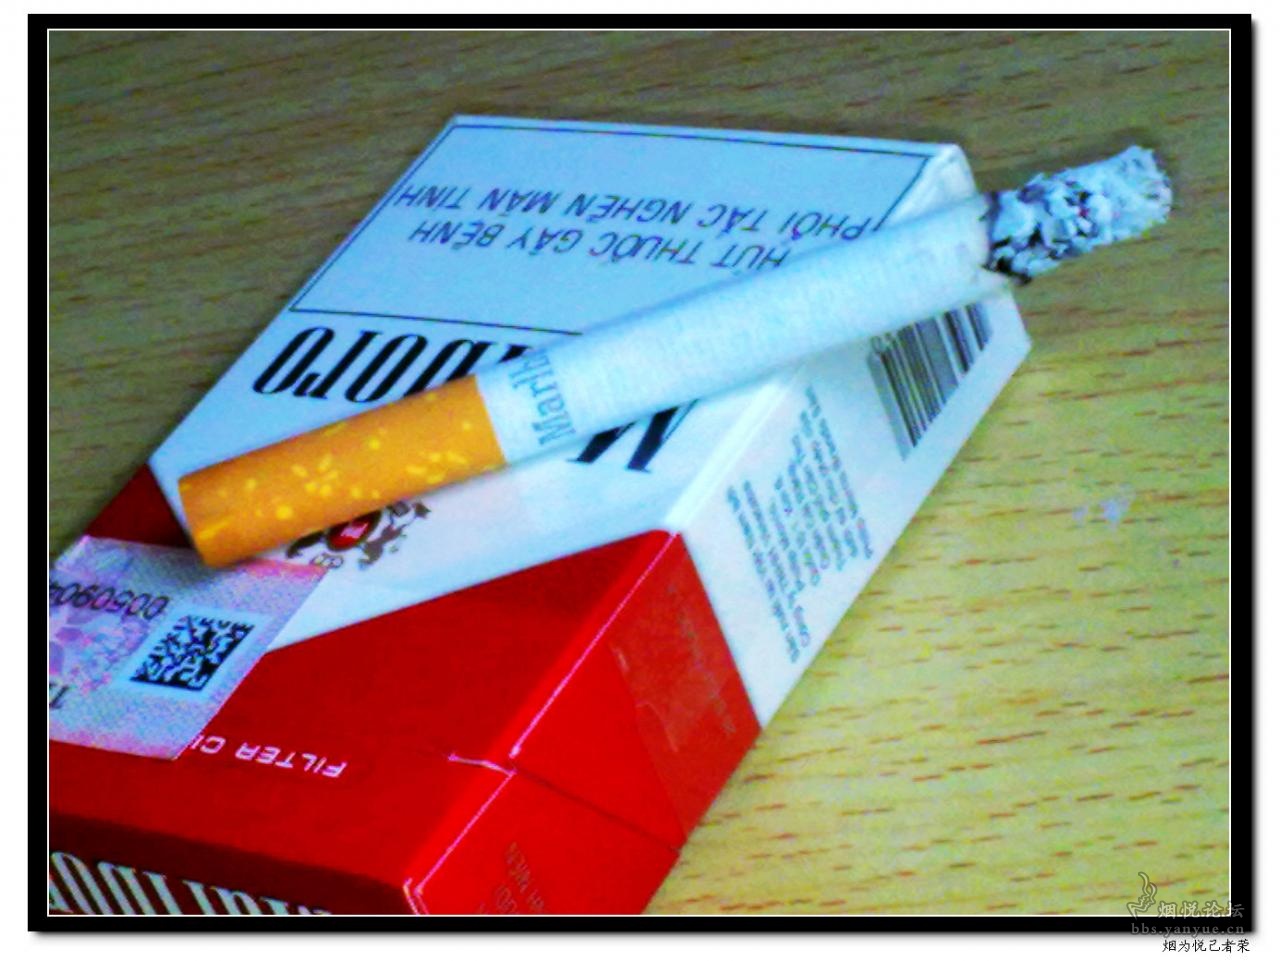 发几款越南烟的烟丝图 - 香烟品鉴 - 烟悦网论坛